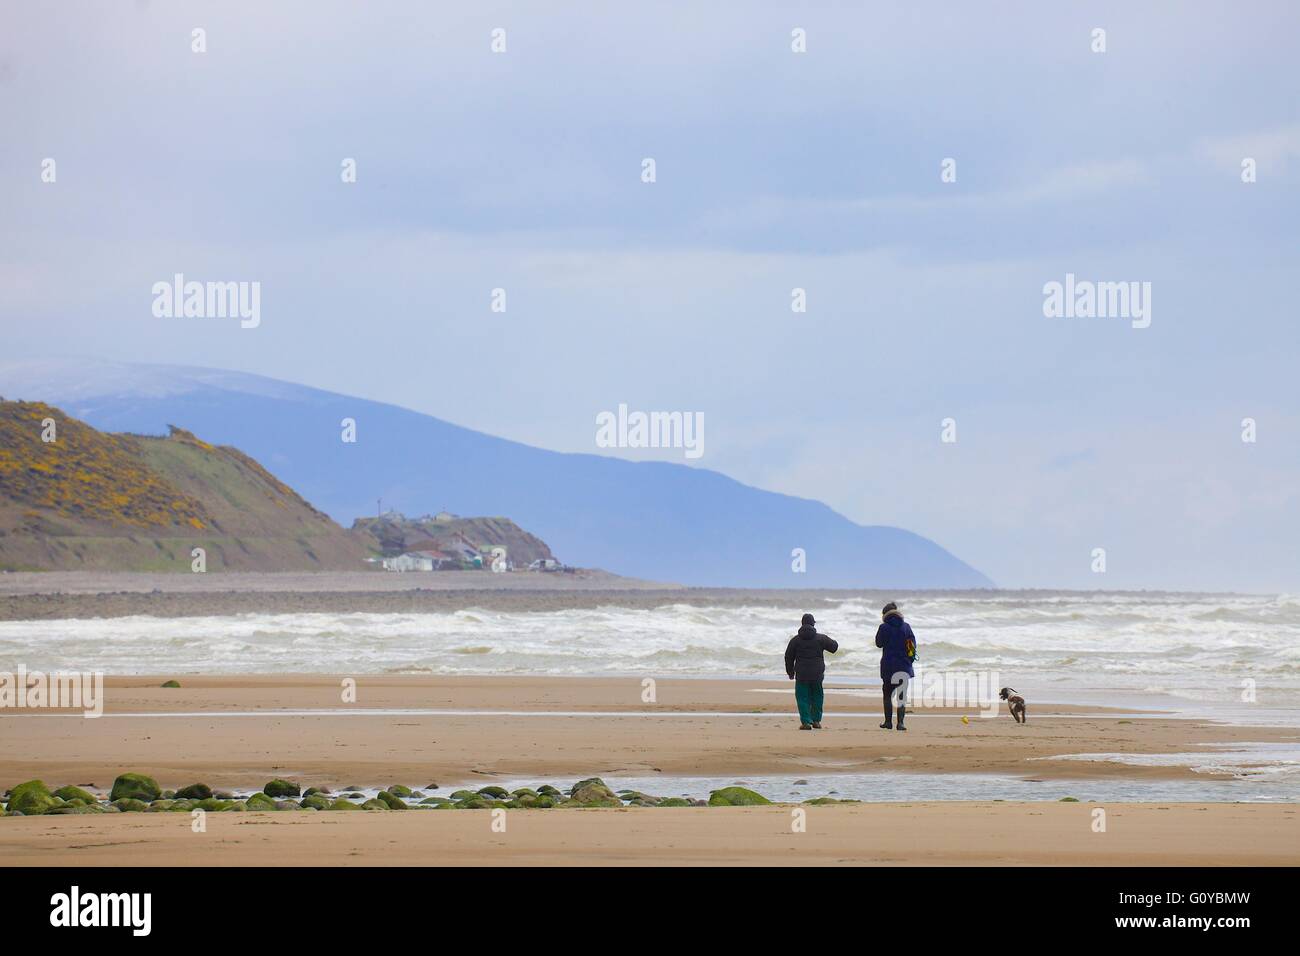 Saint Bienen. Paar, Hund am Strand spazieren gehen. Cumbria, England, Vereinigtes Königreich, Europa. Stockfoto